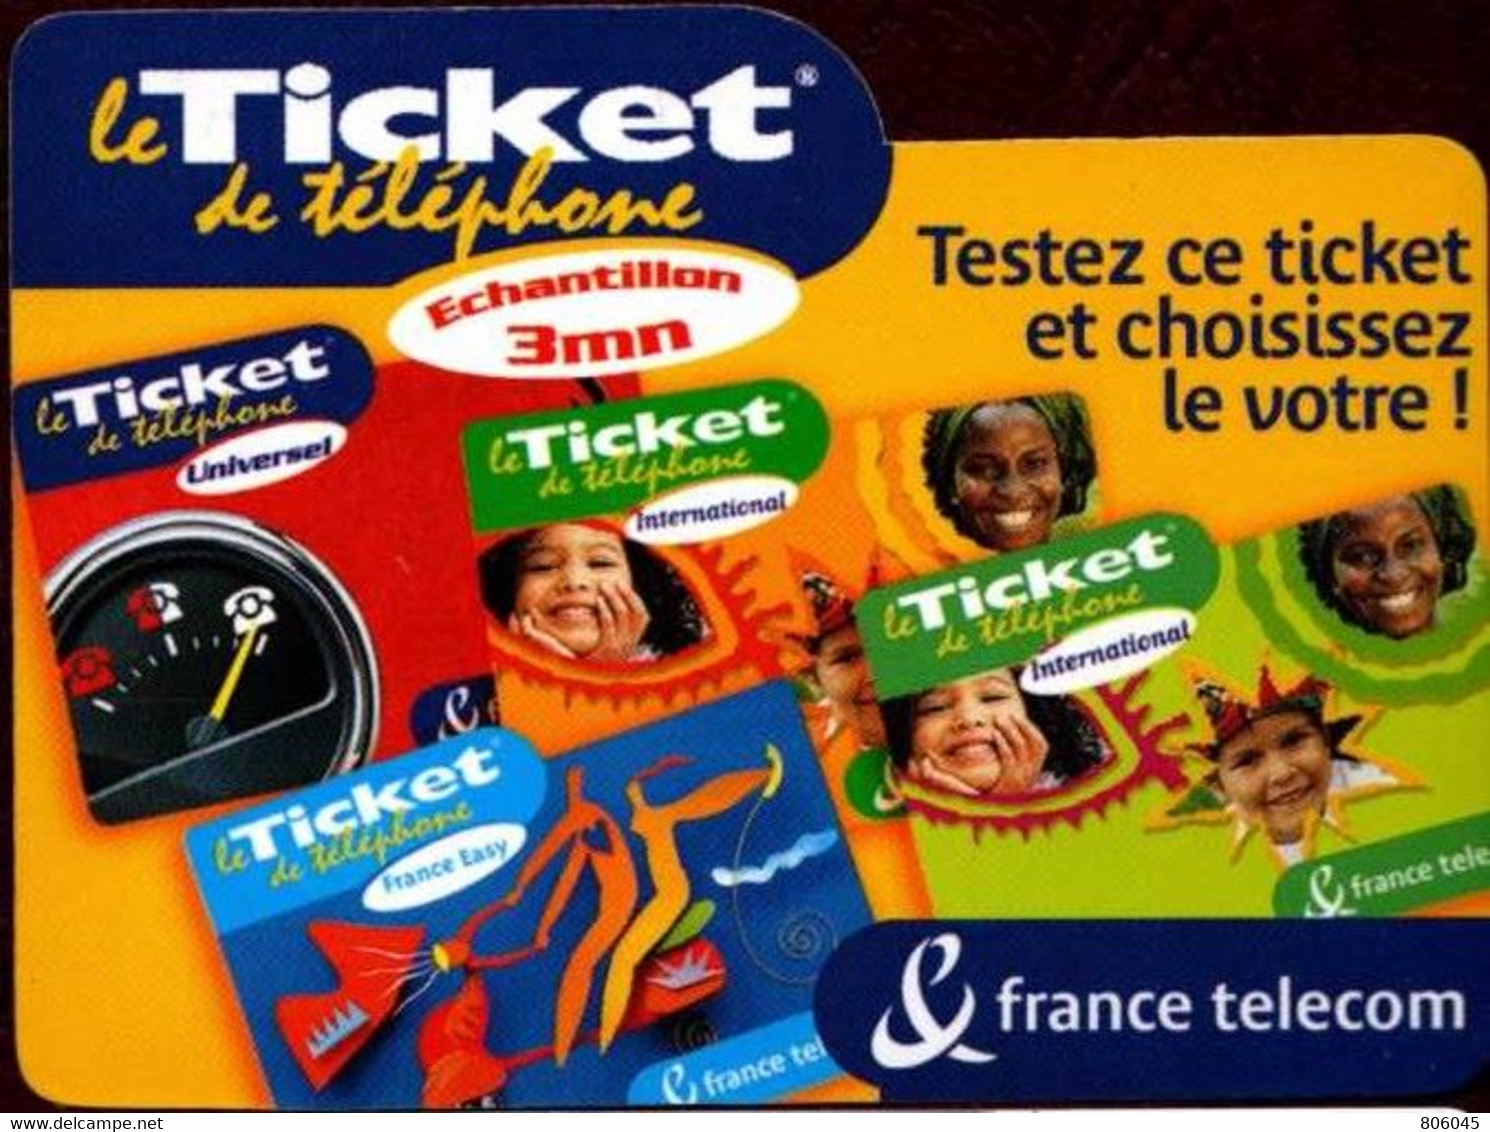 Ticket Télépone Orange - échantillon 3 Mn. - Tickets FT